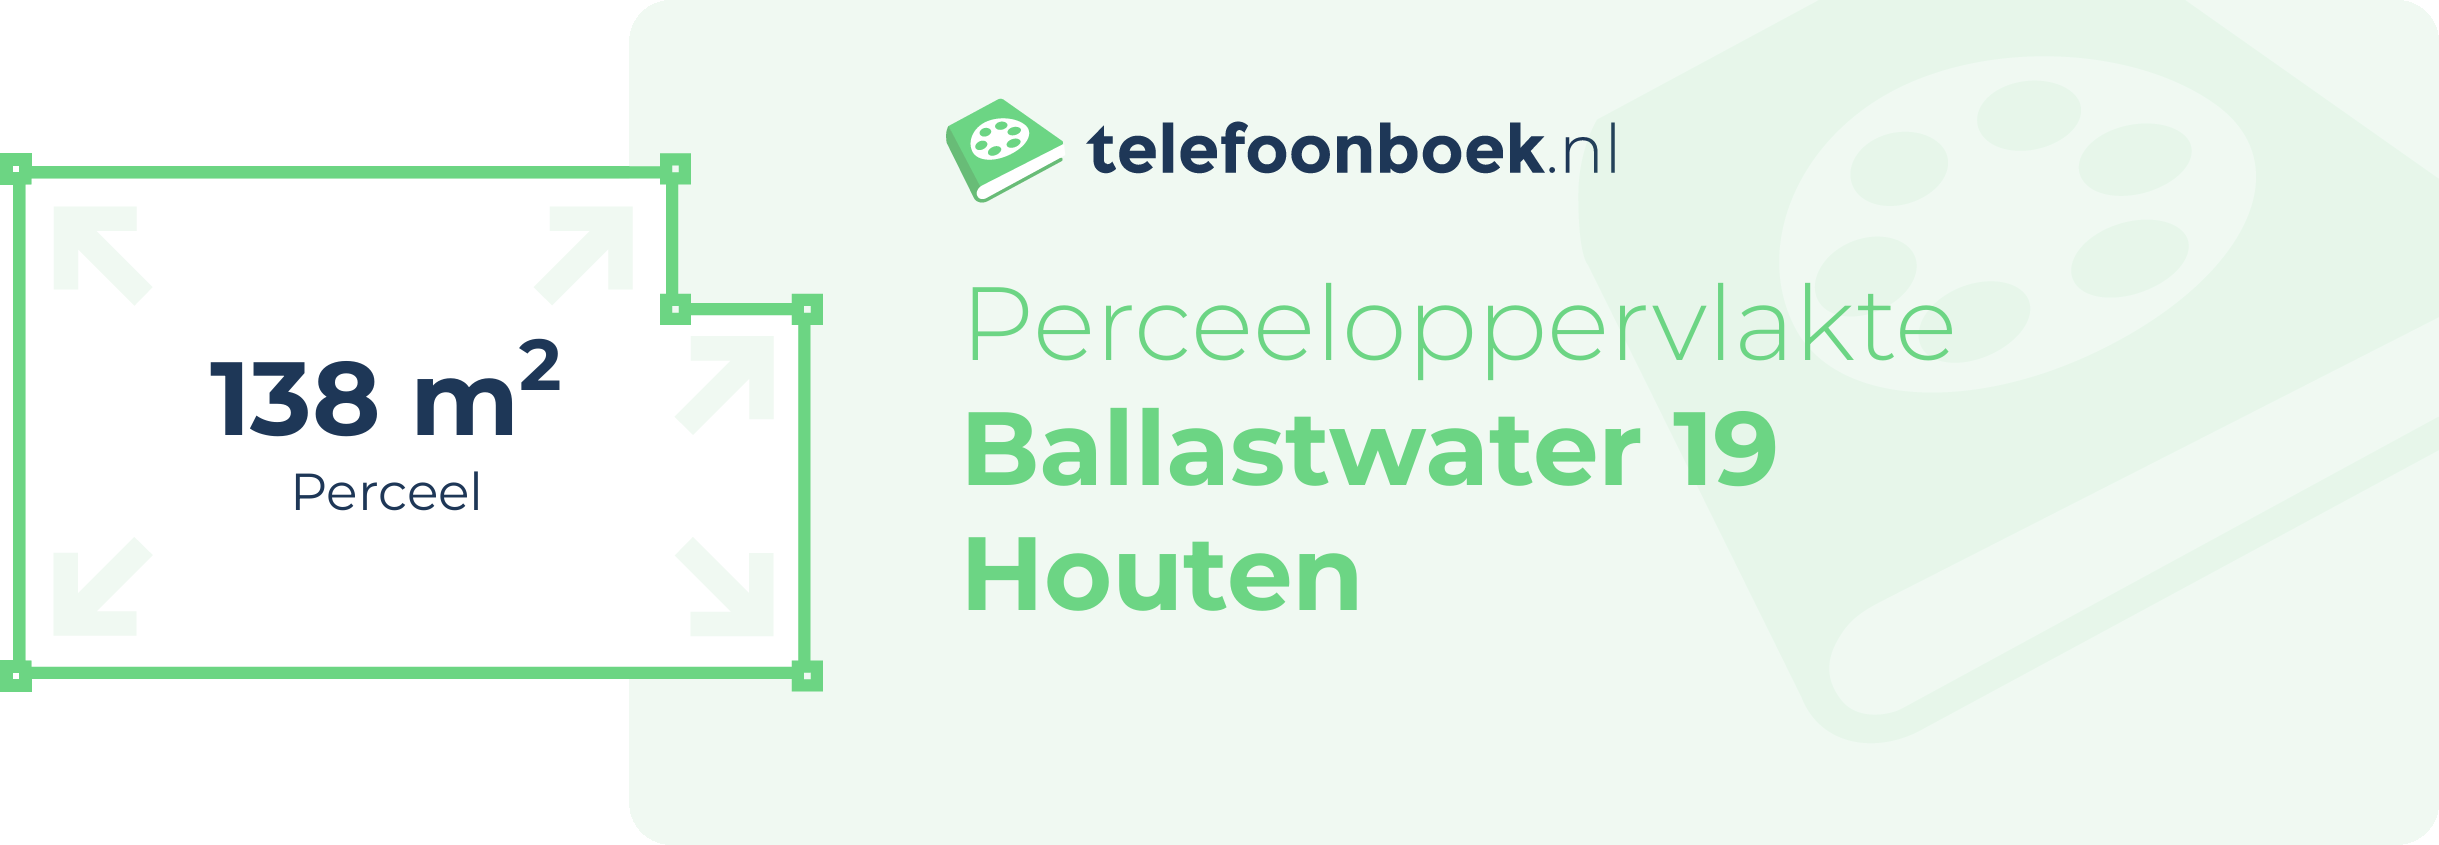 Perceeloppervlakte Ballastwater 19 Houten